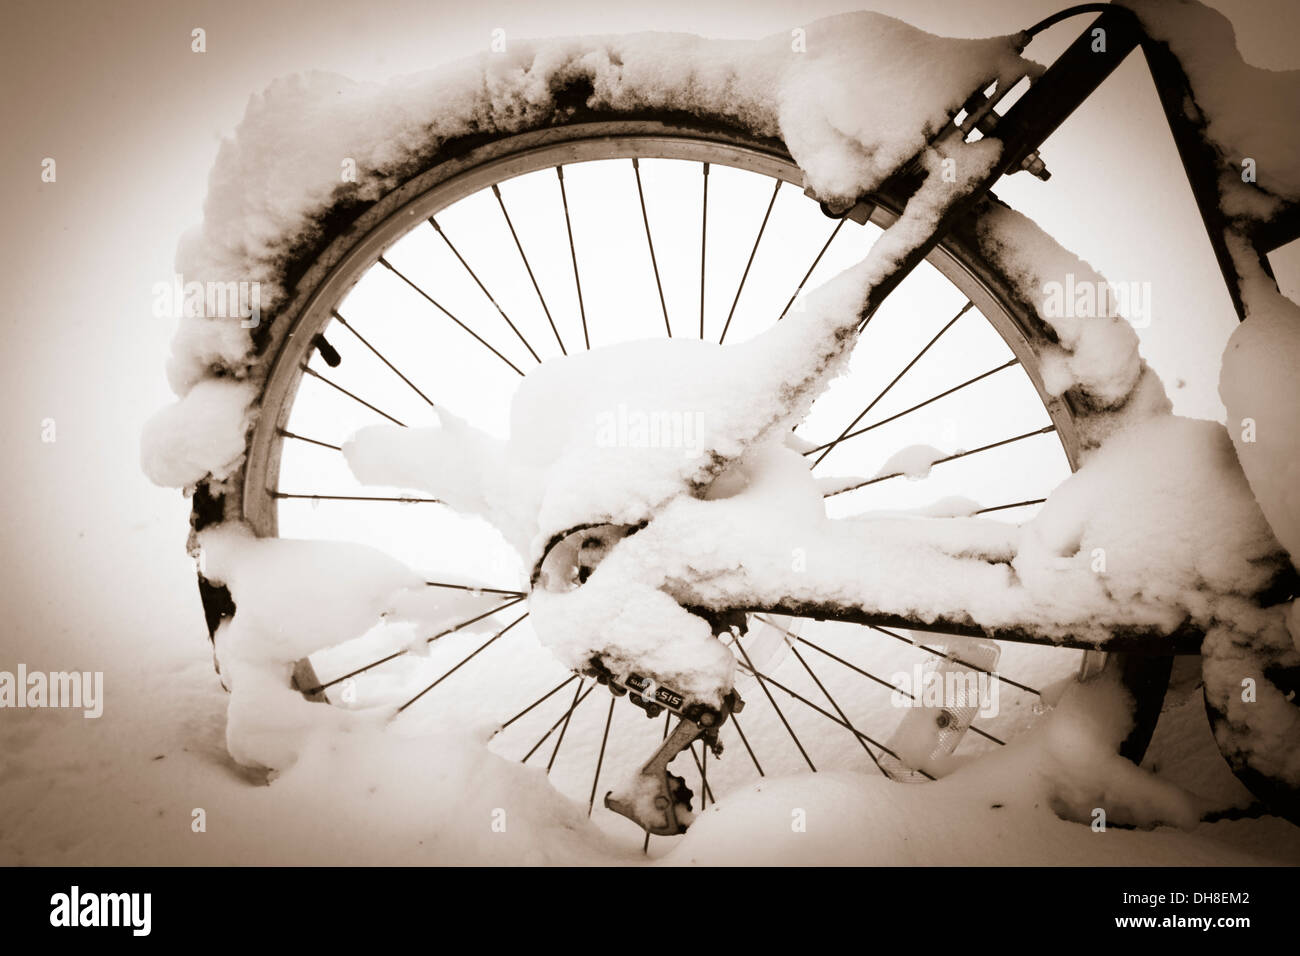 Coperta di neve seppia ruota di bicicletta Foto Stock